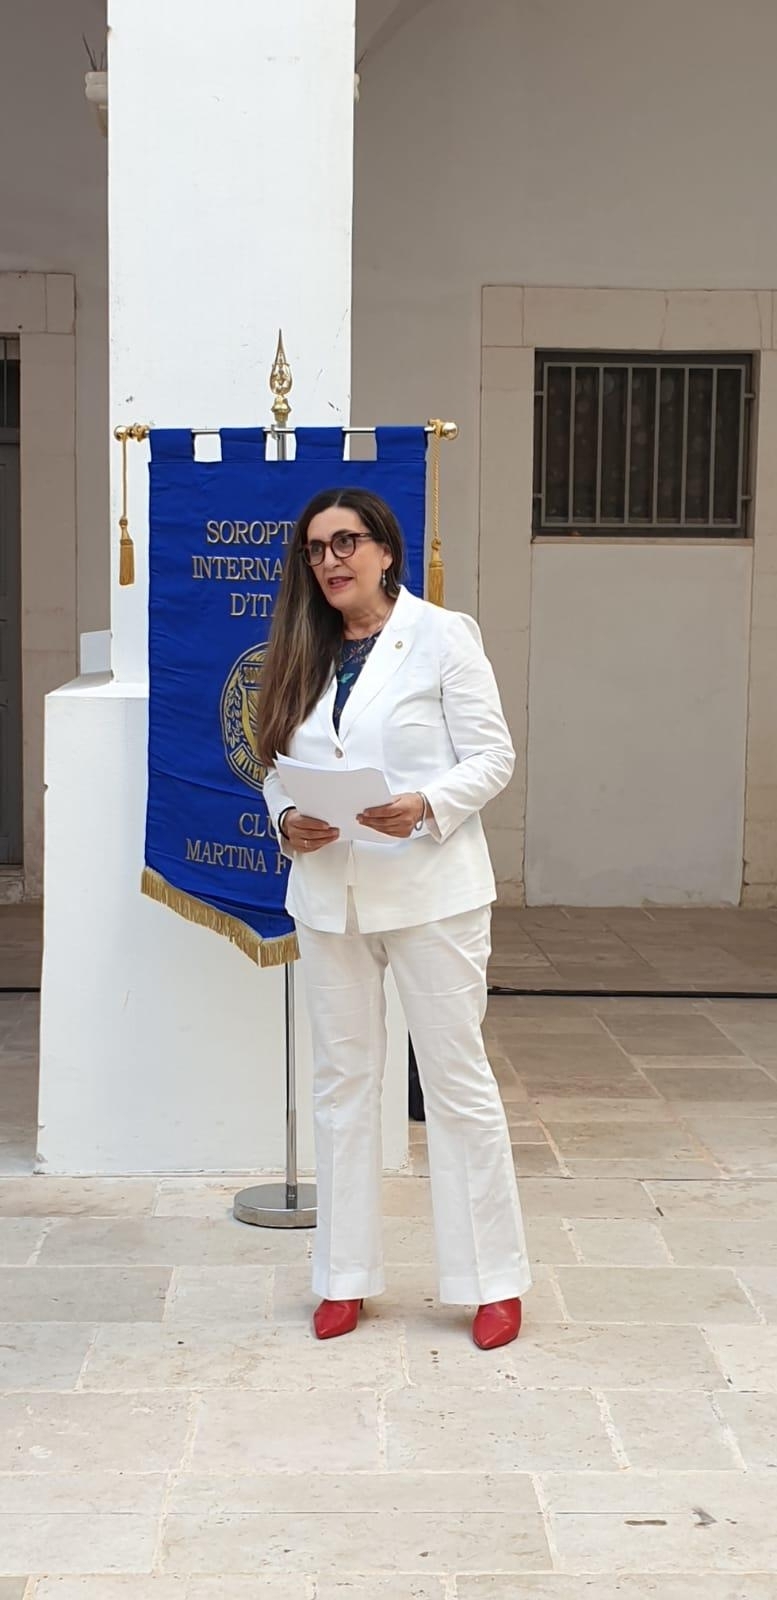 La Presidente Rosa Maria presenta il Progetto e la manifestazione della serata